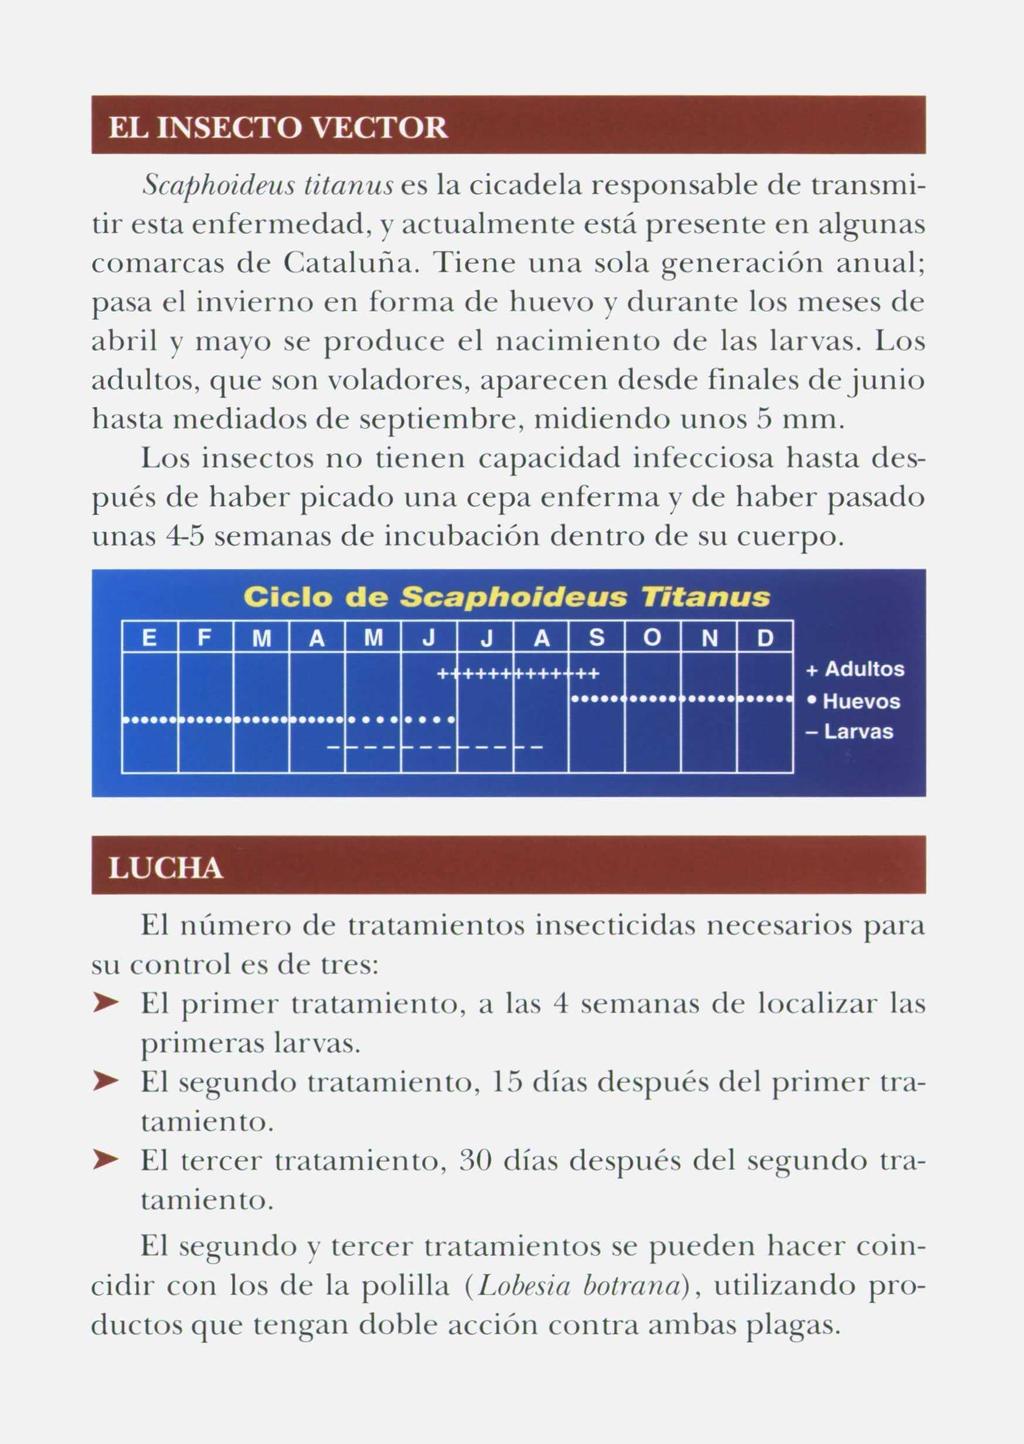 EL INSECTO VECTOR Scaphoideus titanus es la cicadela responsable de transmitir esta enfermedad, y actualmente está presente en algunas comarcas de Cataluña.